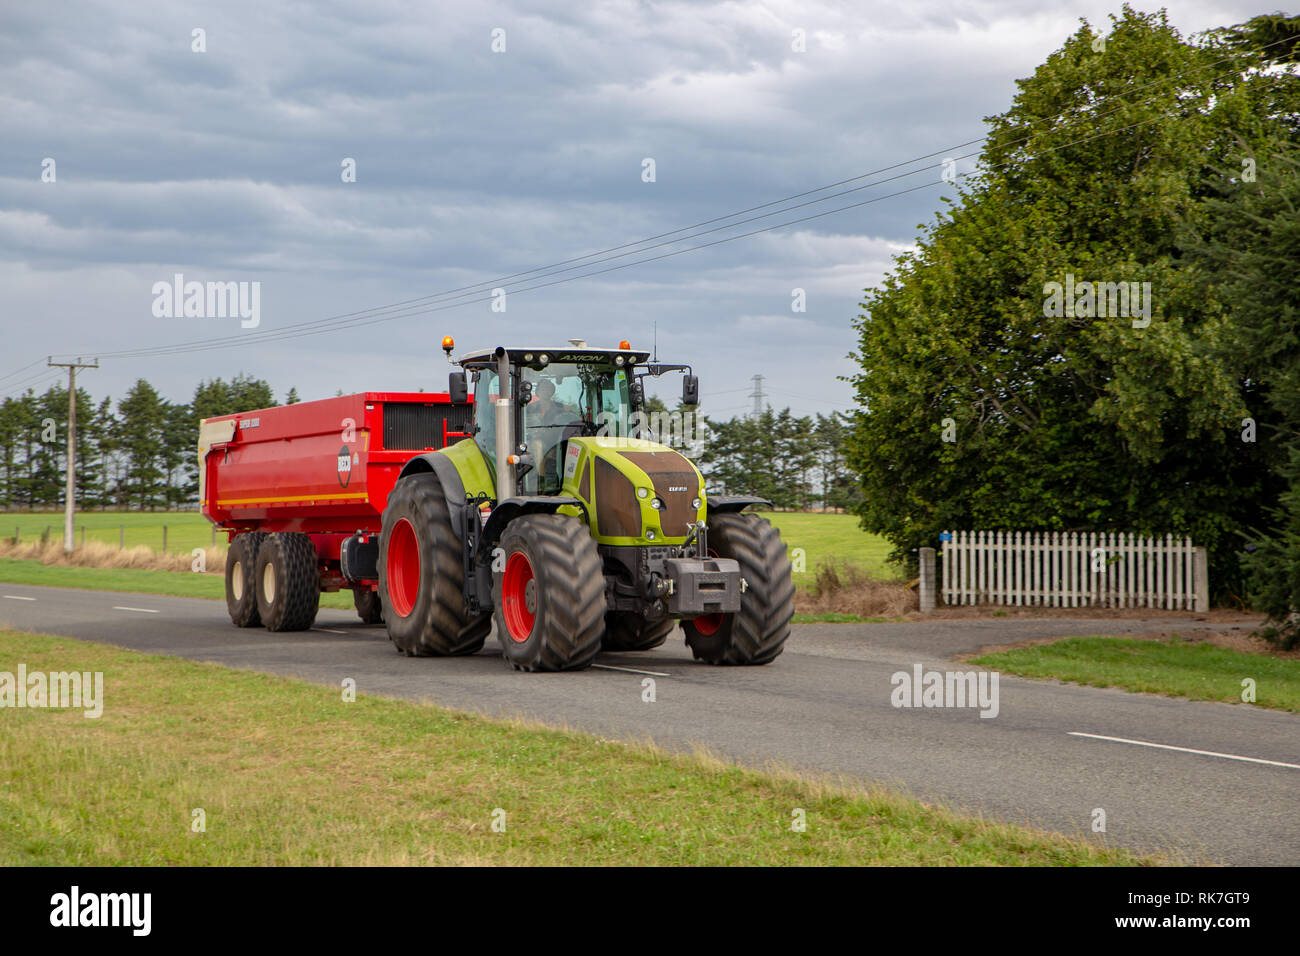 https://c8.alamy.com/compde/rk7gt9/ein-abschleppen-des-traktors-ein-samen-bin-anhanger-entladt-samen-aus-dem-feldhacksler-in-canterbury-neuseeland-rk7gt9.jpg